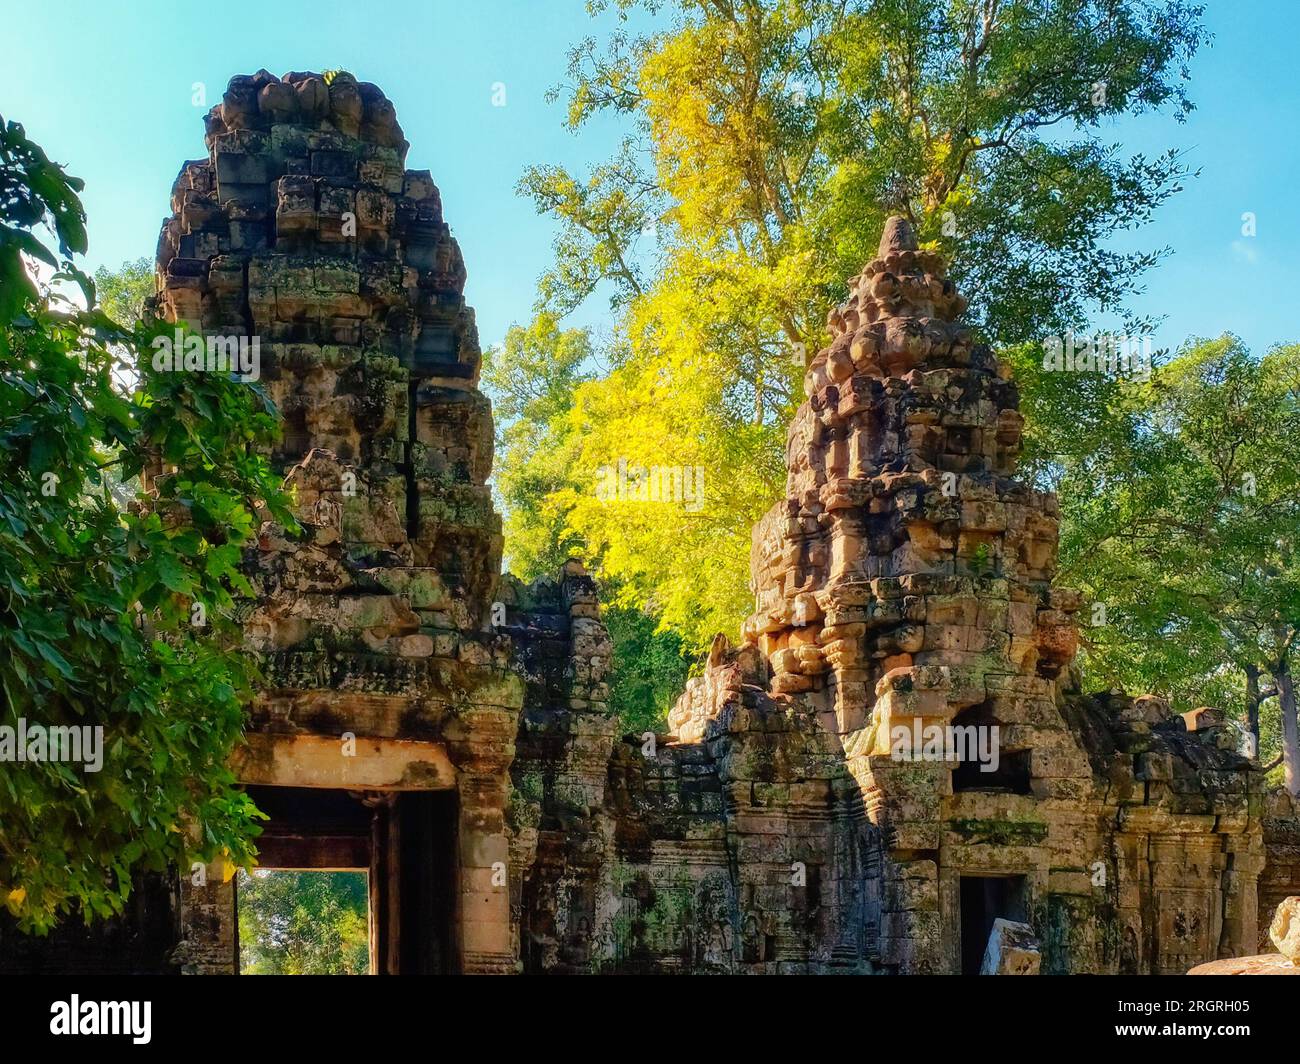 Die Leinwand der Natur: Malerische antike Türme im kambodschanischen Herbstwald von Preah Khan. Stockfoto